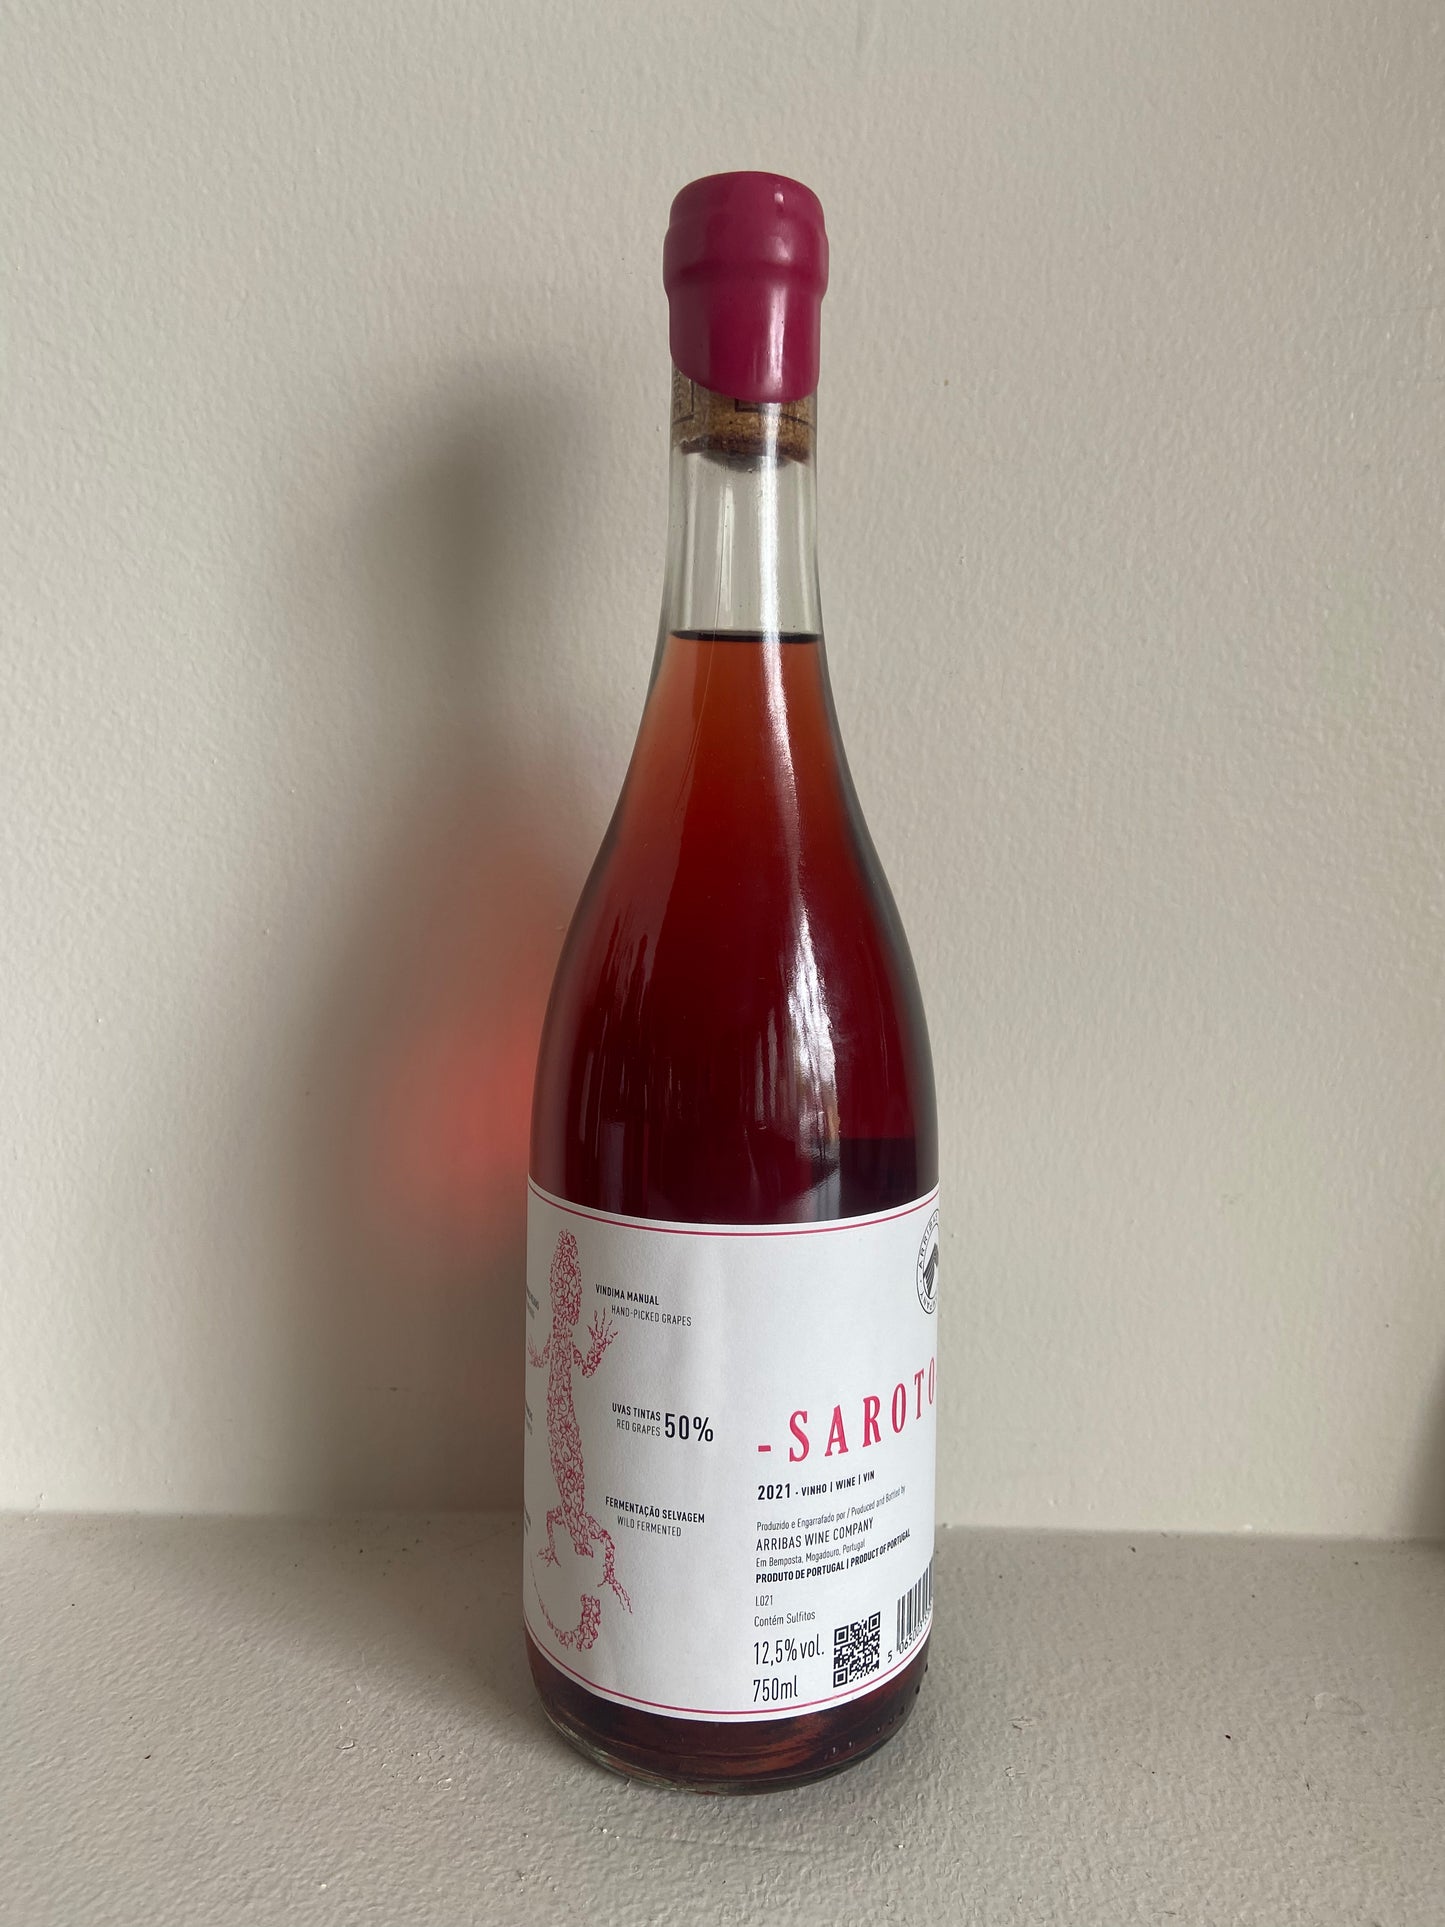 Arribas Wine "Saroto" Rose 2021